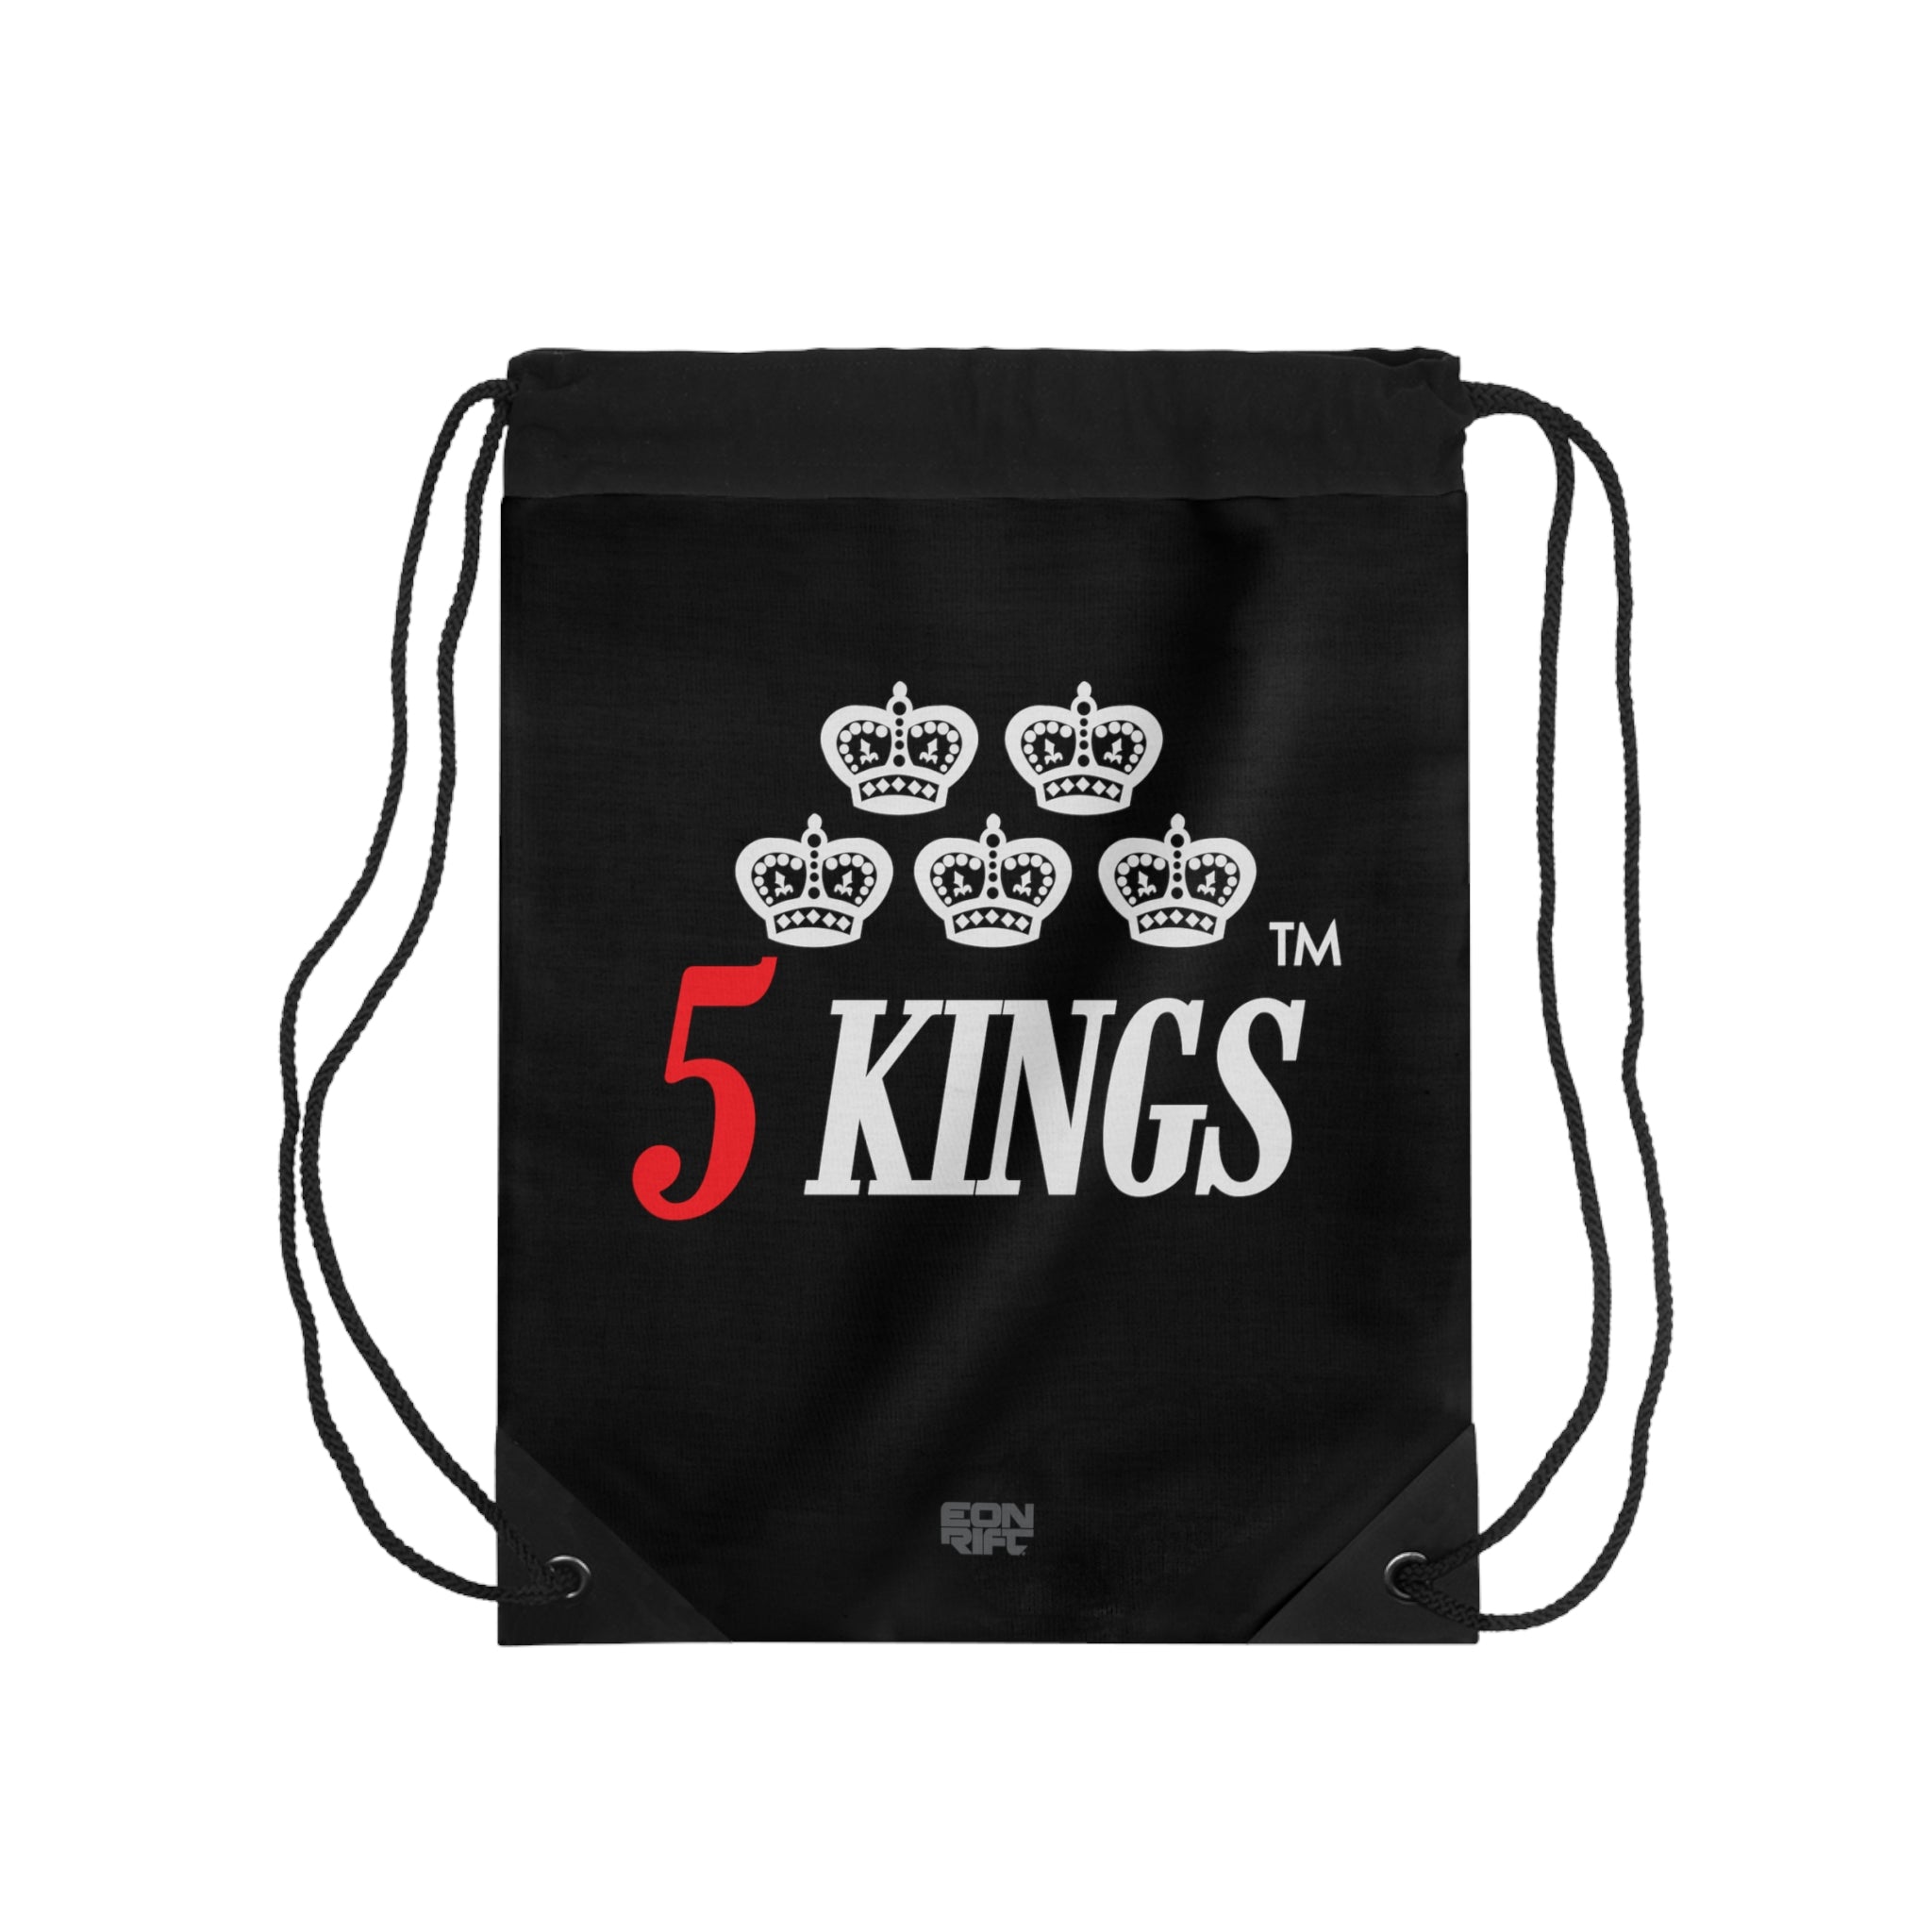 5 KINGS | Drawstring Bag